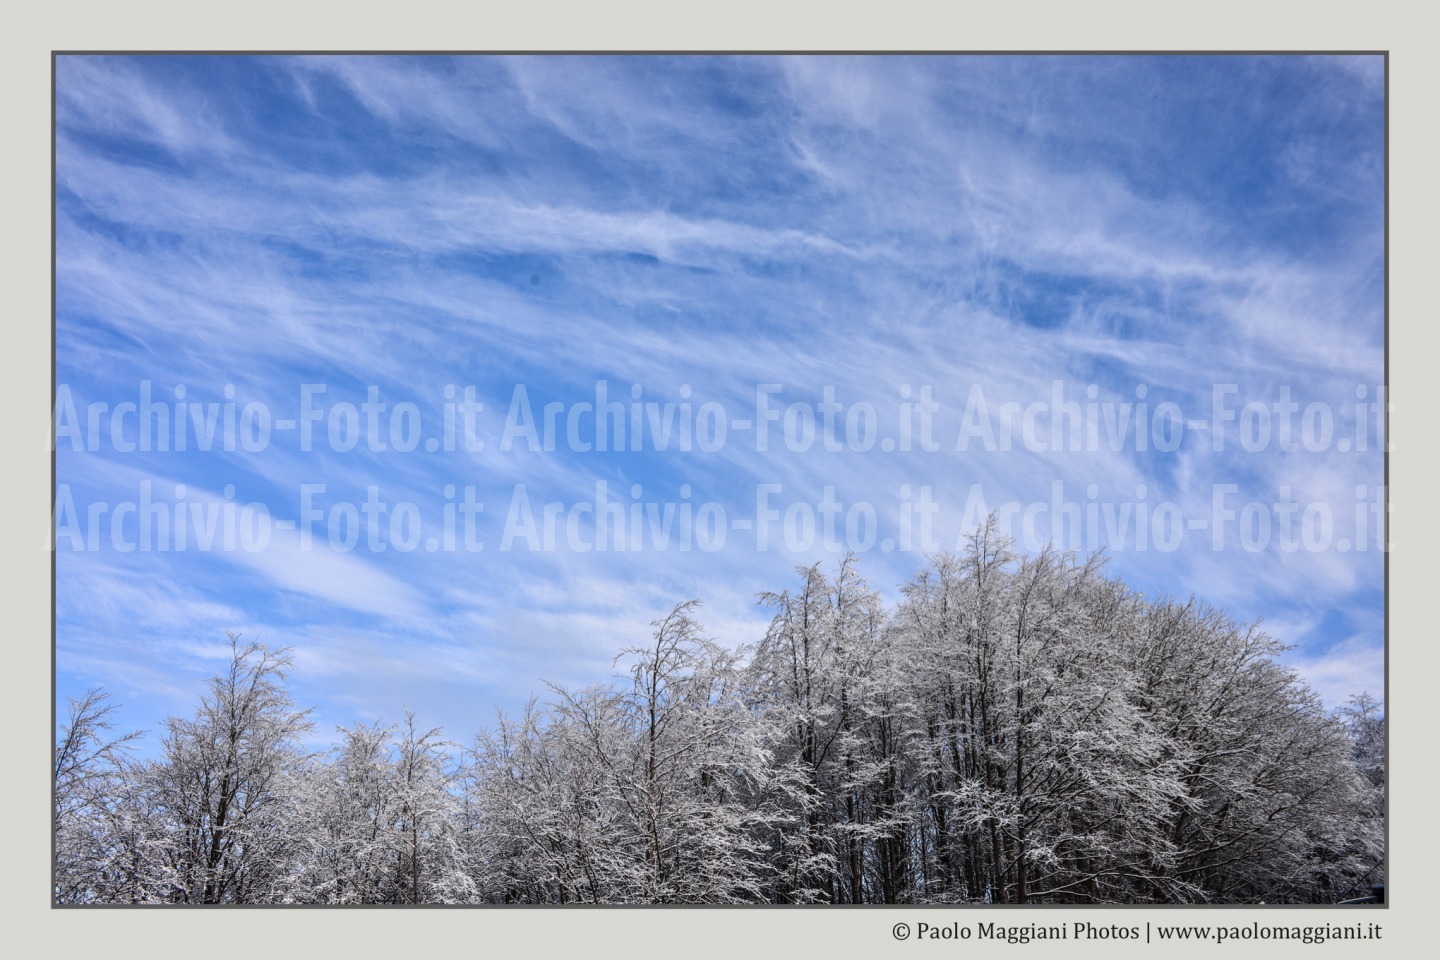 Effetti-di-nuvole-a-Cerreto-Laghi-Apennino-Tosco-Emiliano-Paolo-Maggiani-Photos-D61018P_MAG8012